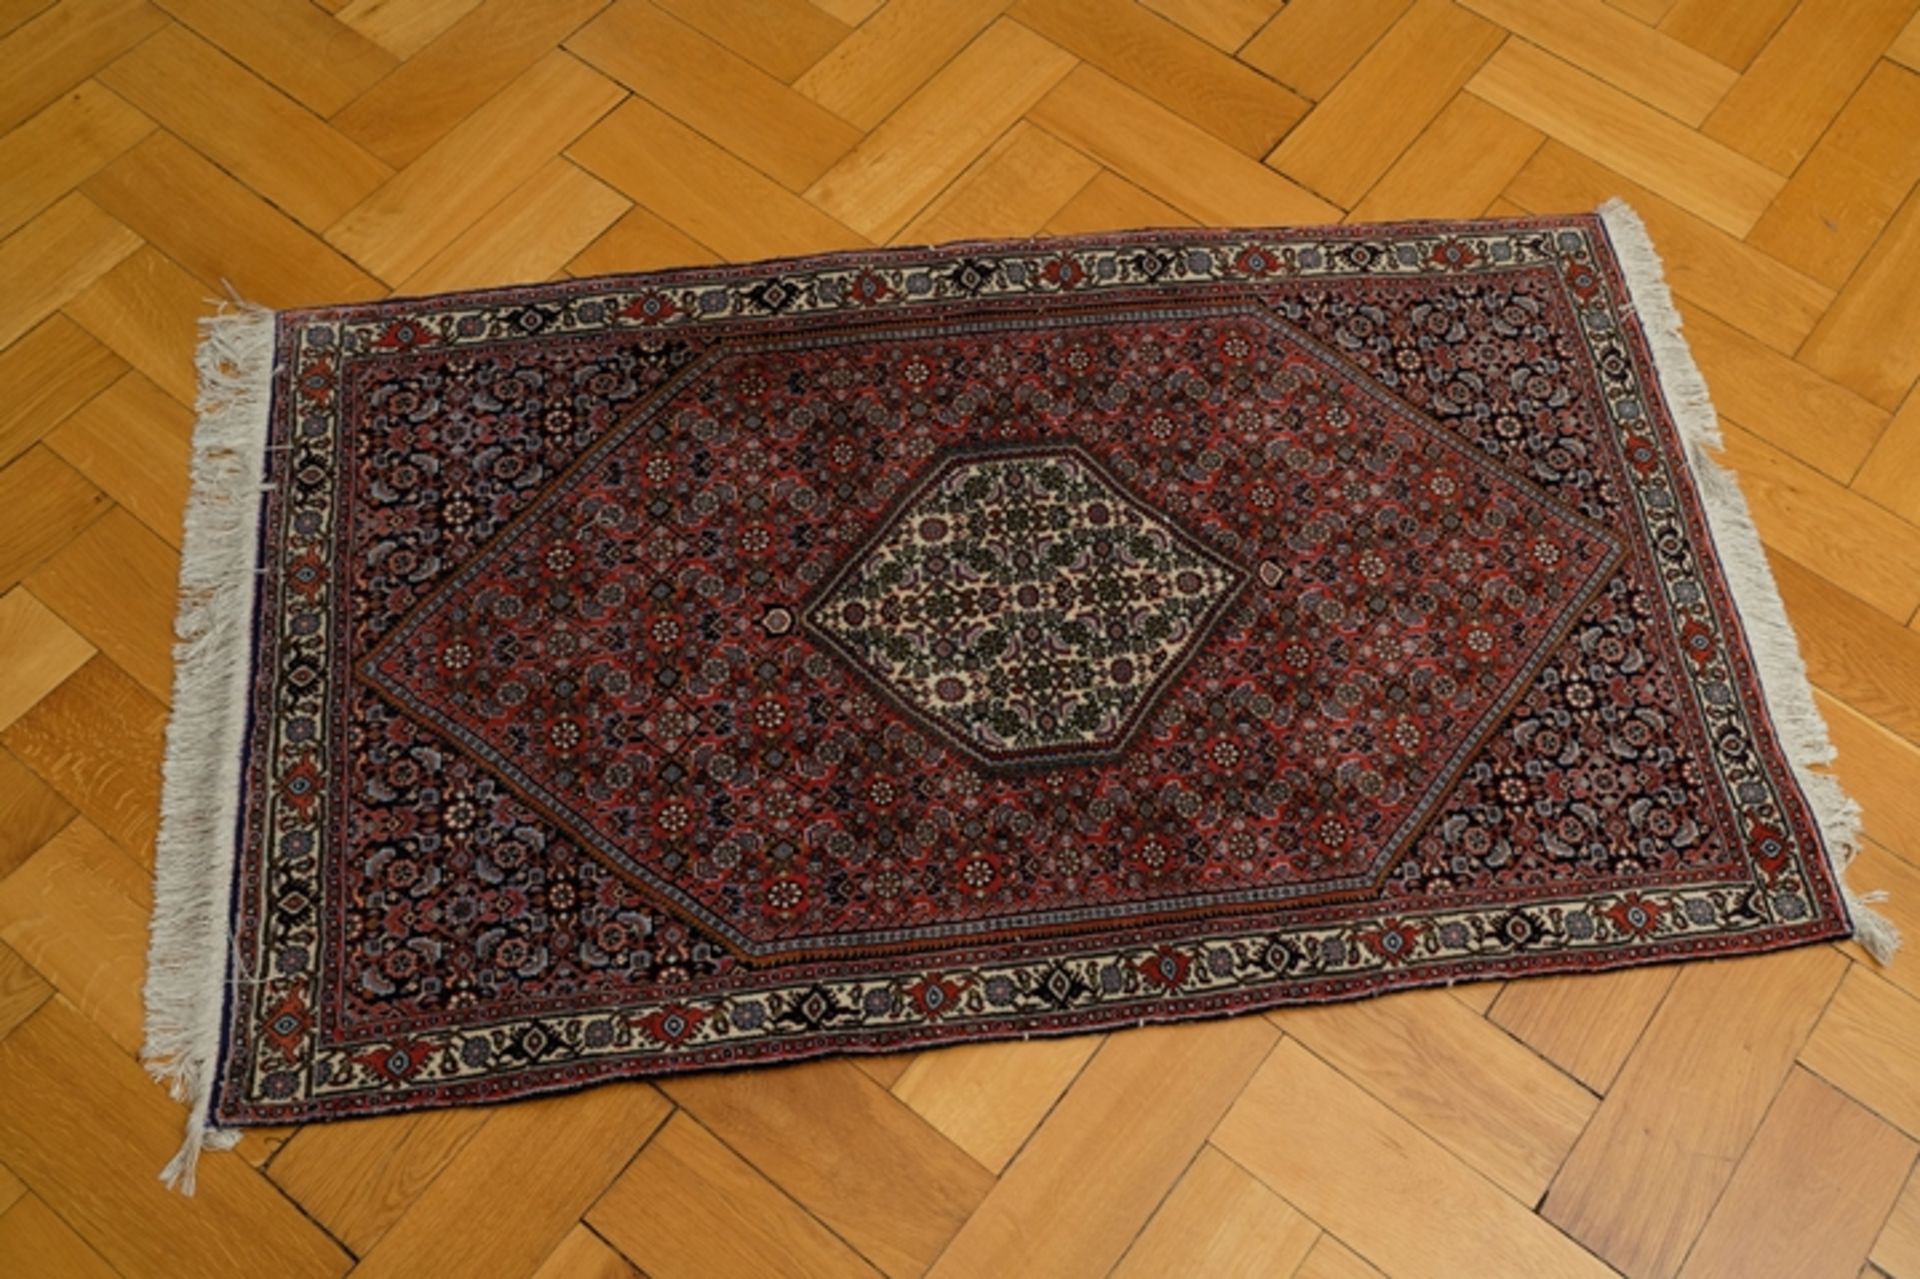 Teppich in leichten Rot-/Brauntönen, Rauten-Design, Fransen - Bild 2 aus 2